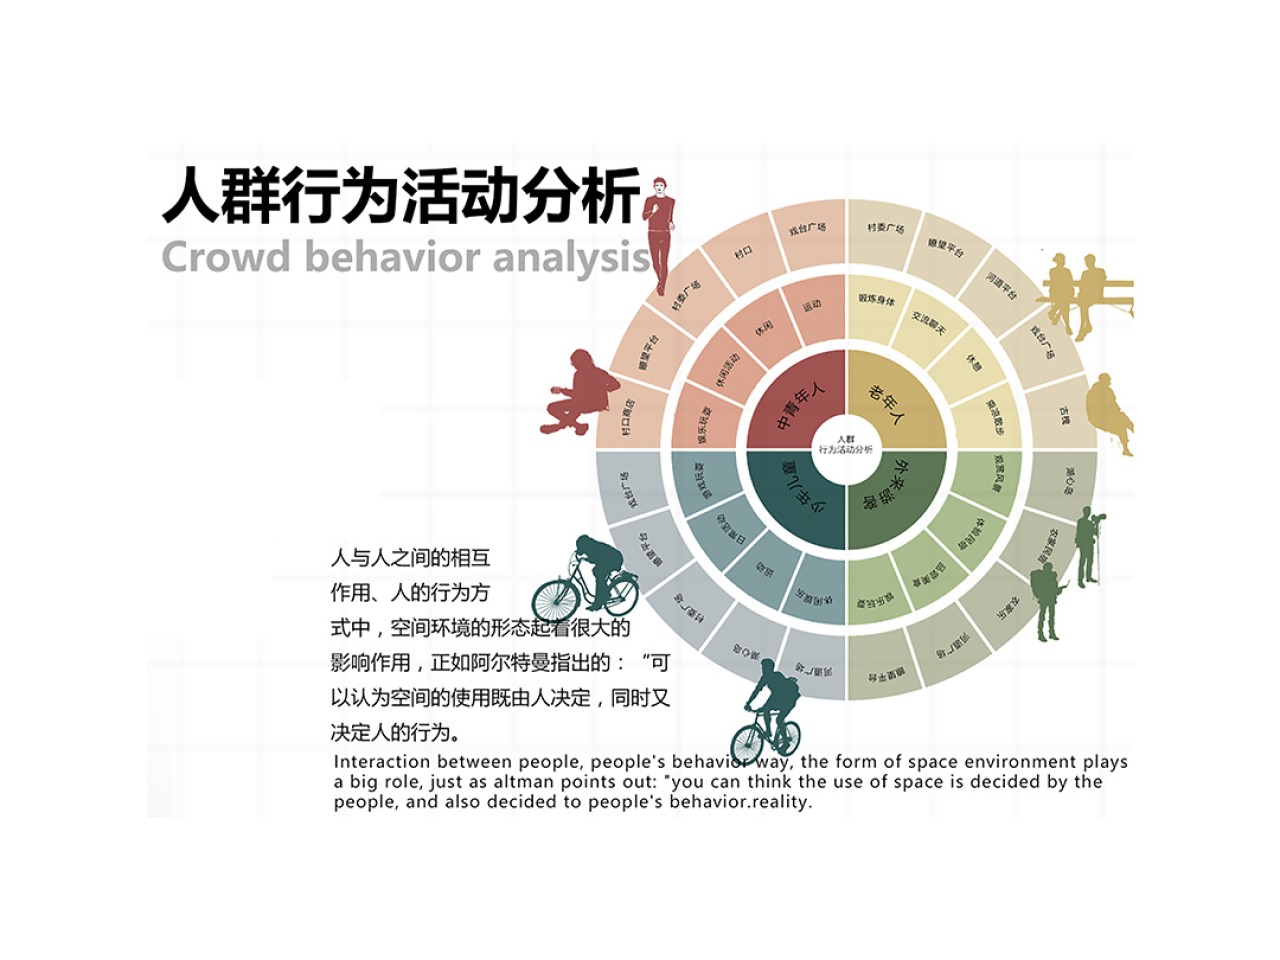 《景行行止——王峰村公共空间环境营造》人群行为活动分析